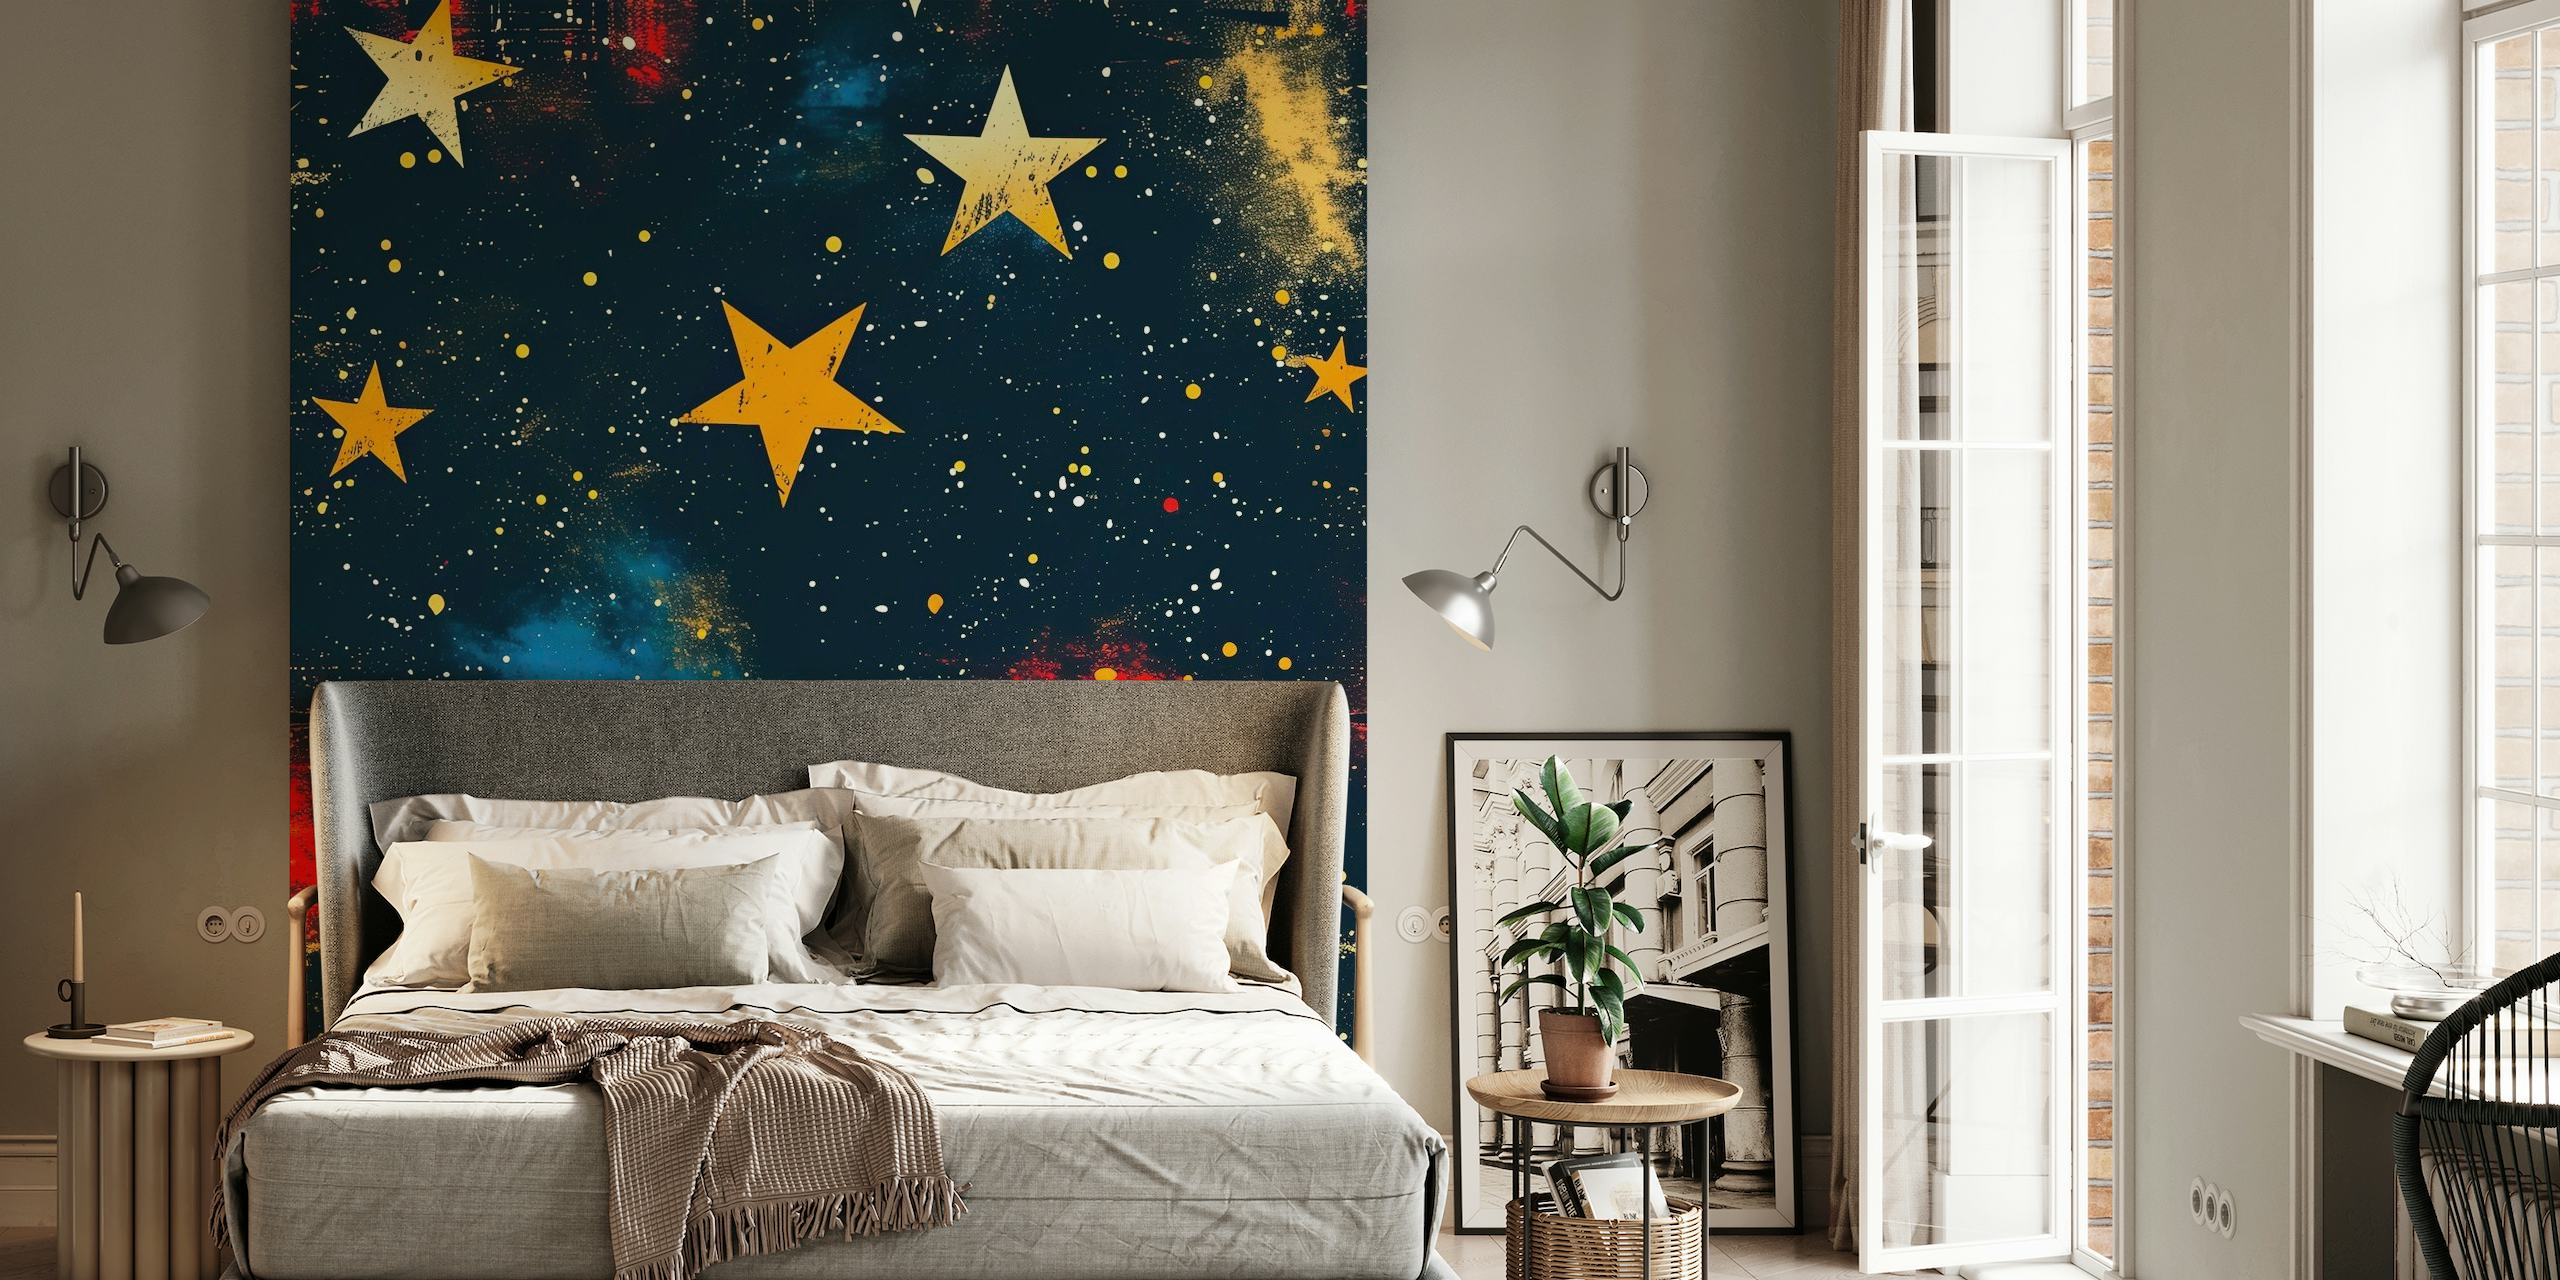 The Stars Above fotobehang met levendige sterren en nevels op een donkere achtergrond